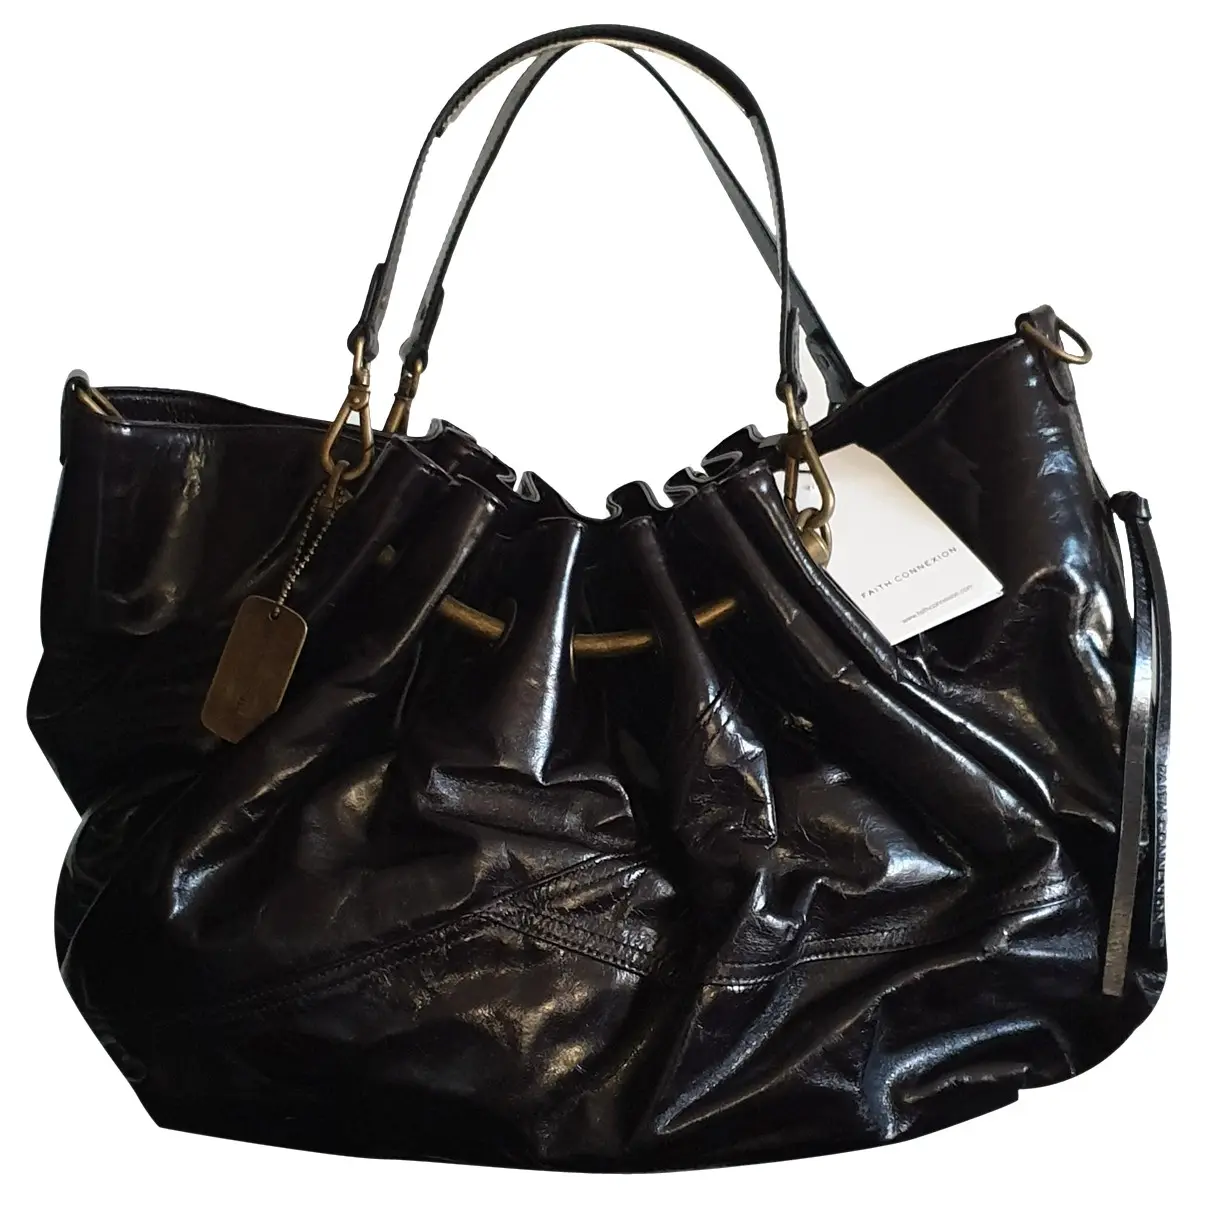 Leather handbag Faith Connexion